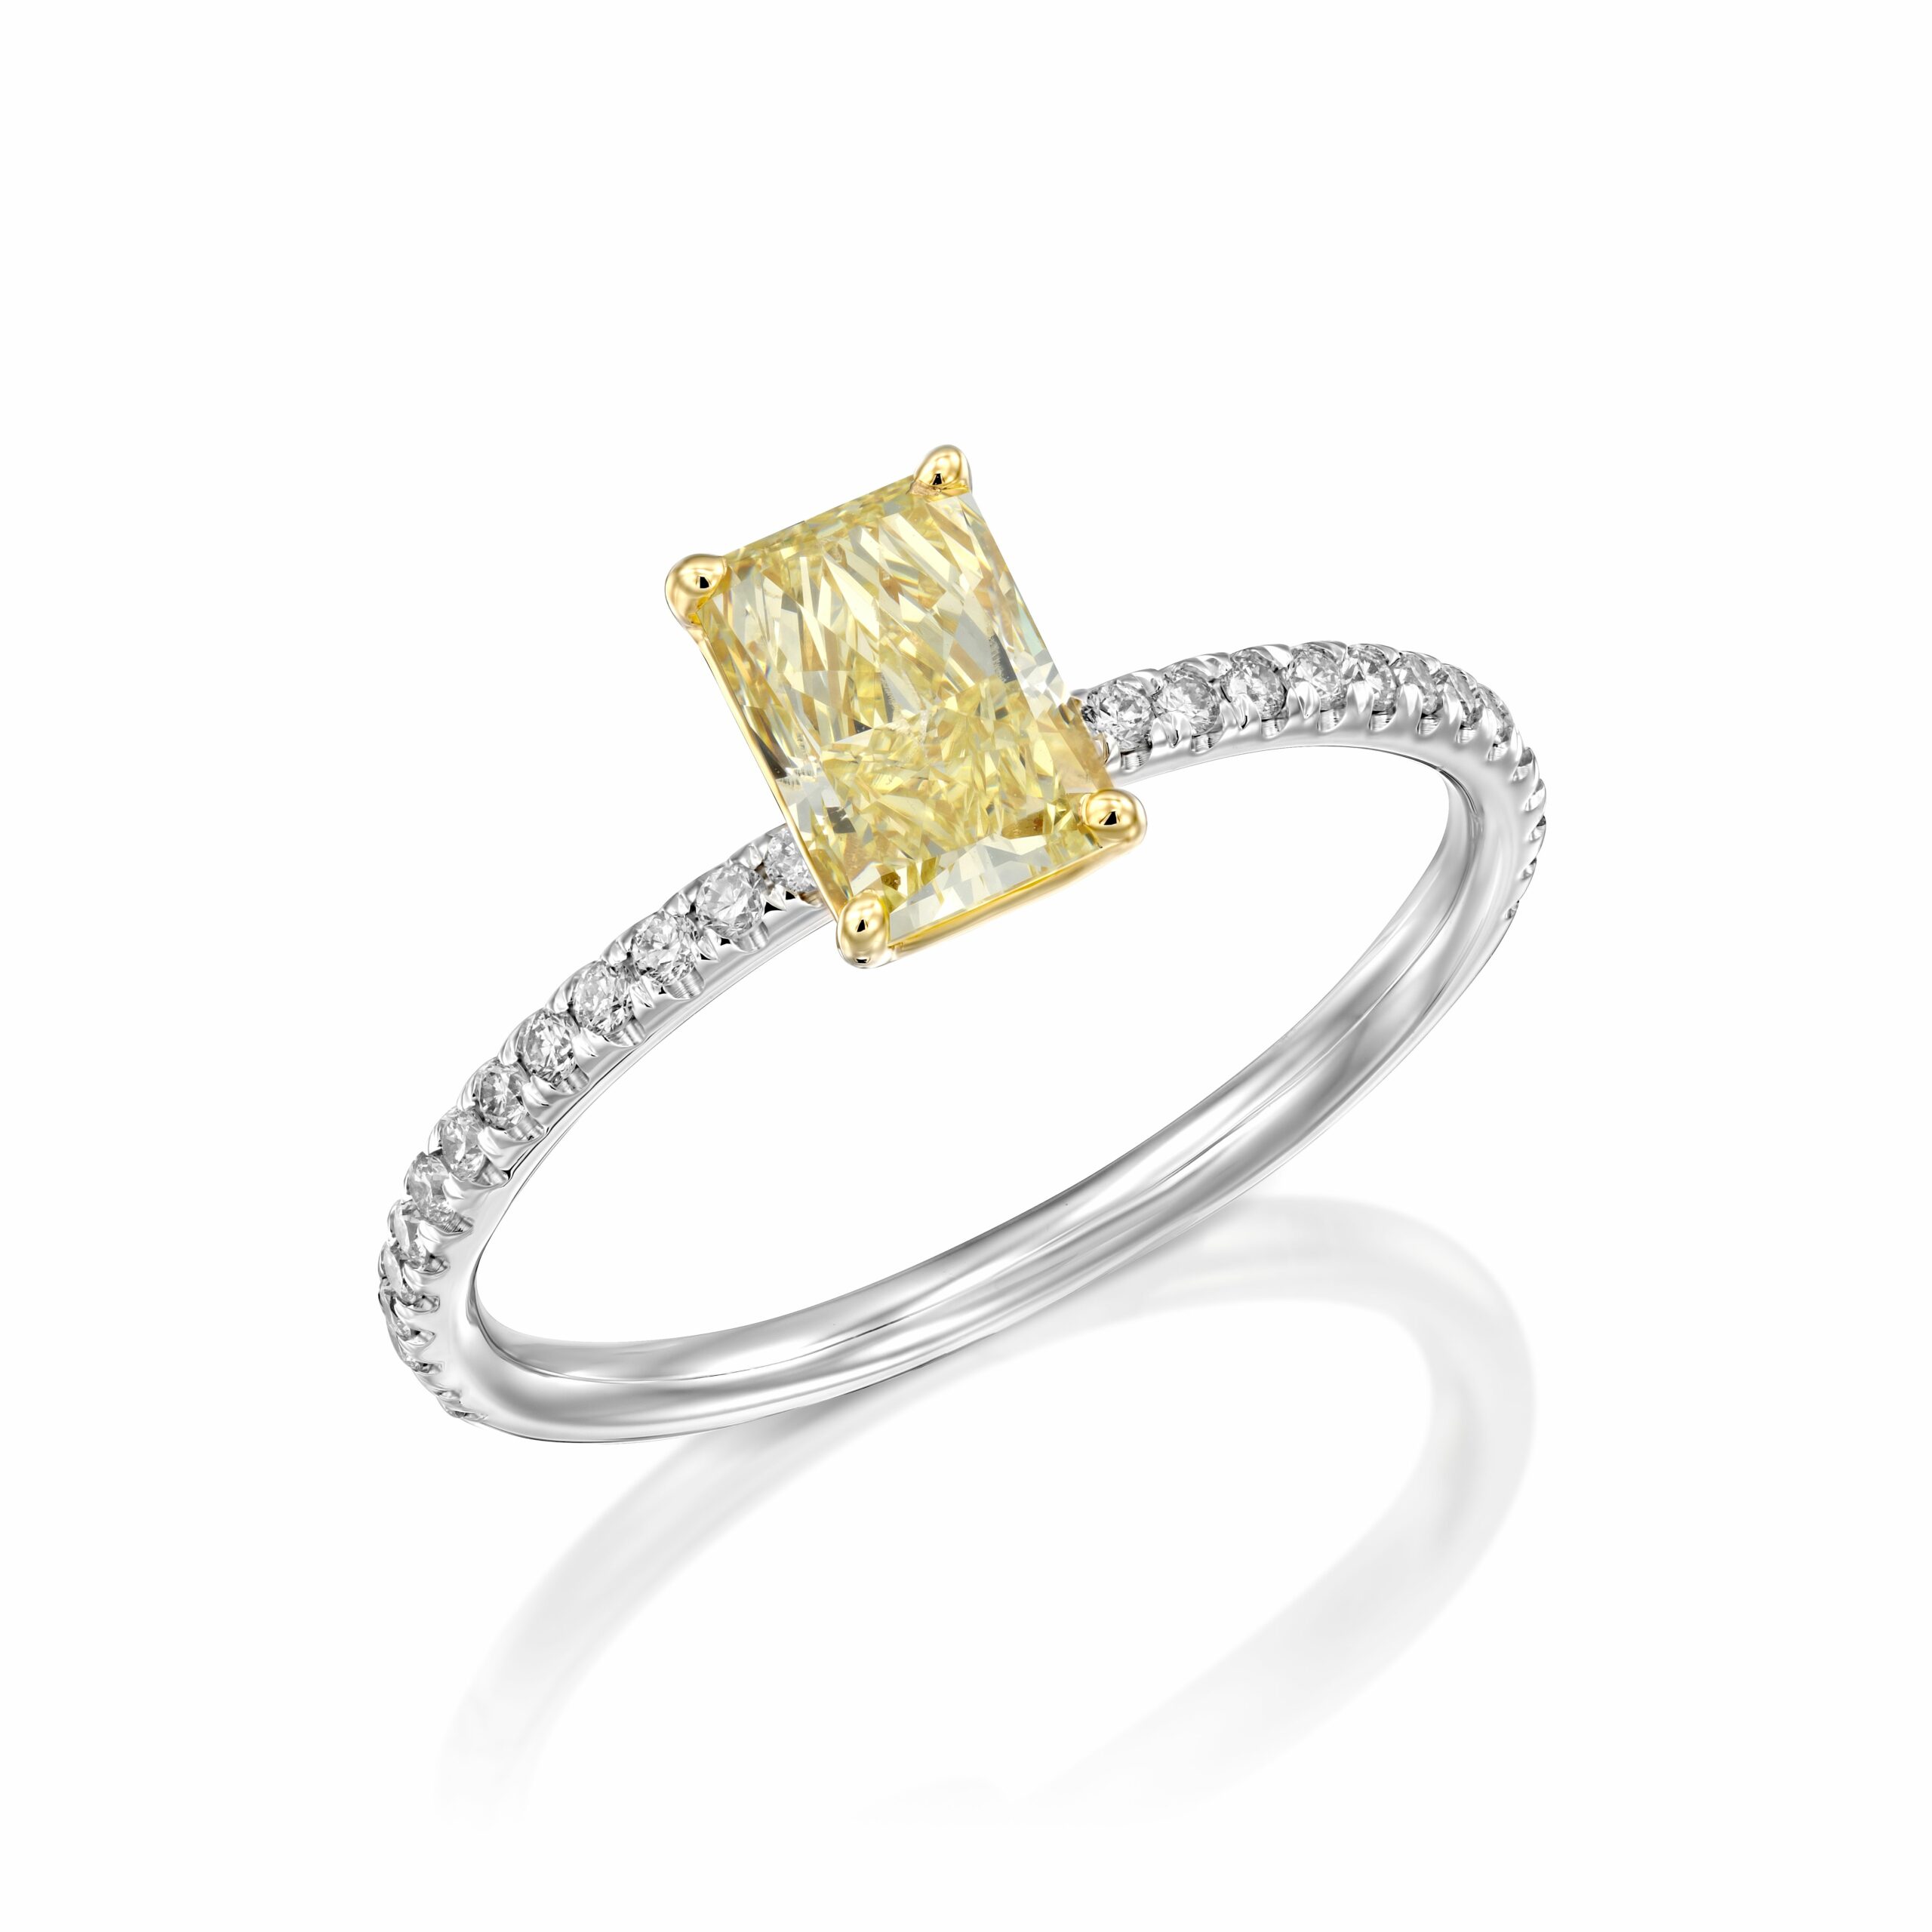 טבעת כסף אלגנטית הכוללת חלק מרכזי יהלום צהוב בחיתוך קורן מוקף בהדגשי יהלומים לבנים קטנים יותר על הרצועה.